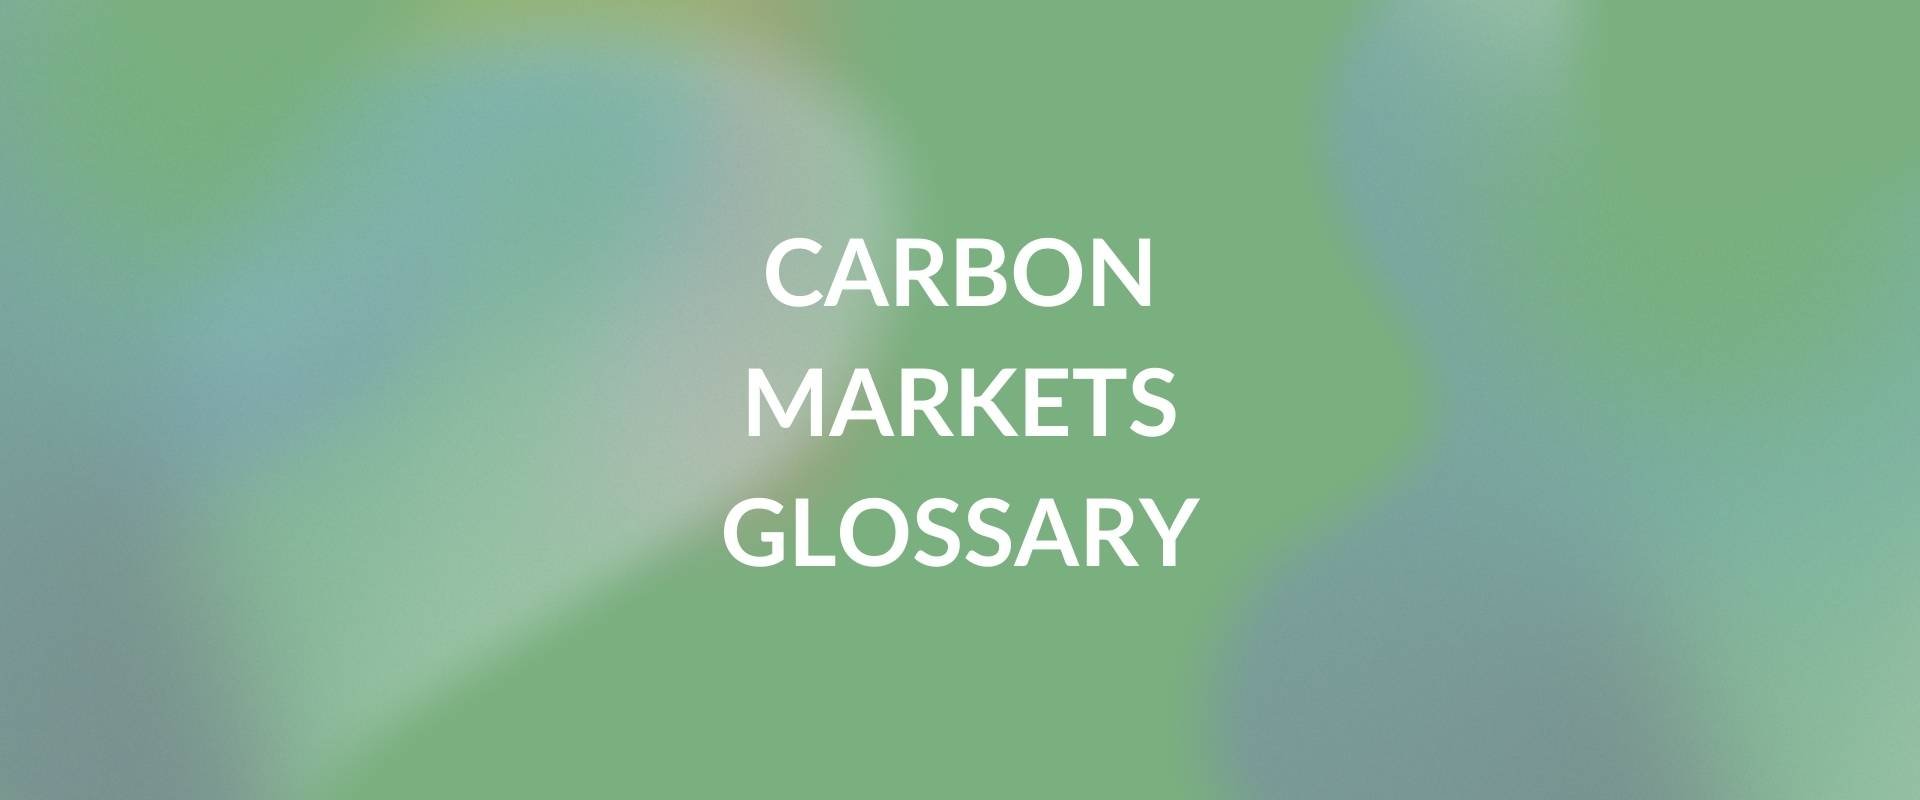 Carbon Markets Glossary